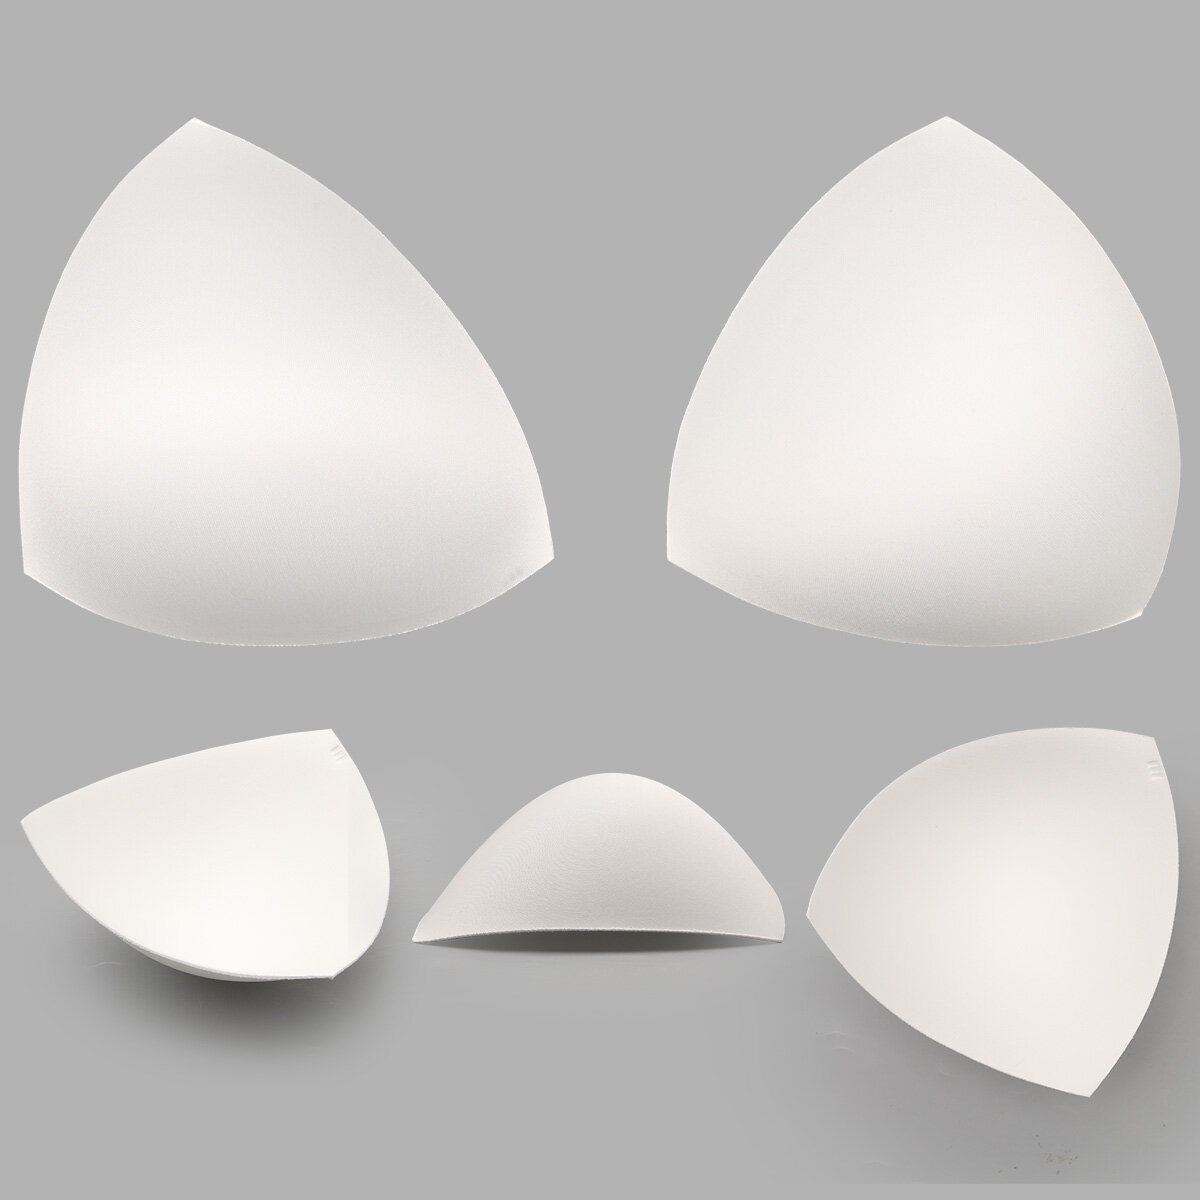 Чашечки для бюстгальтера Antynea, треугольные, без уступа, с равномерным наполнением, FN-20, размер 3 (100-105) (приглушенный белый), 1 пара